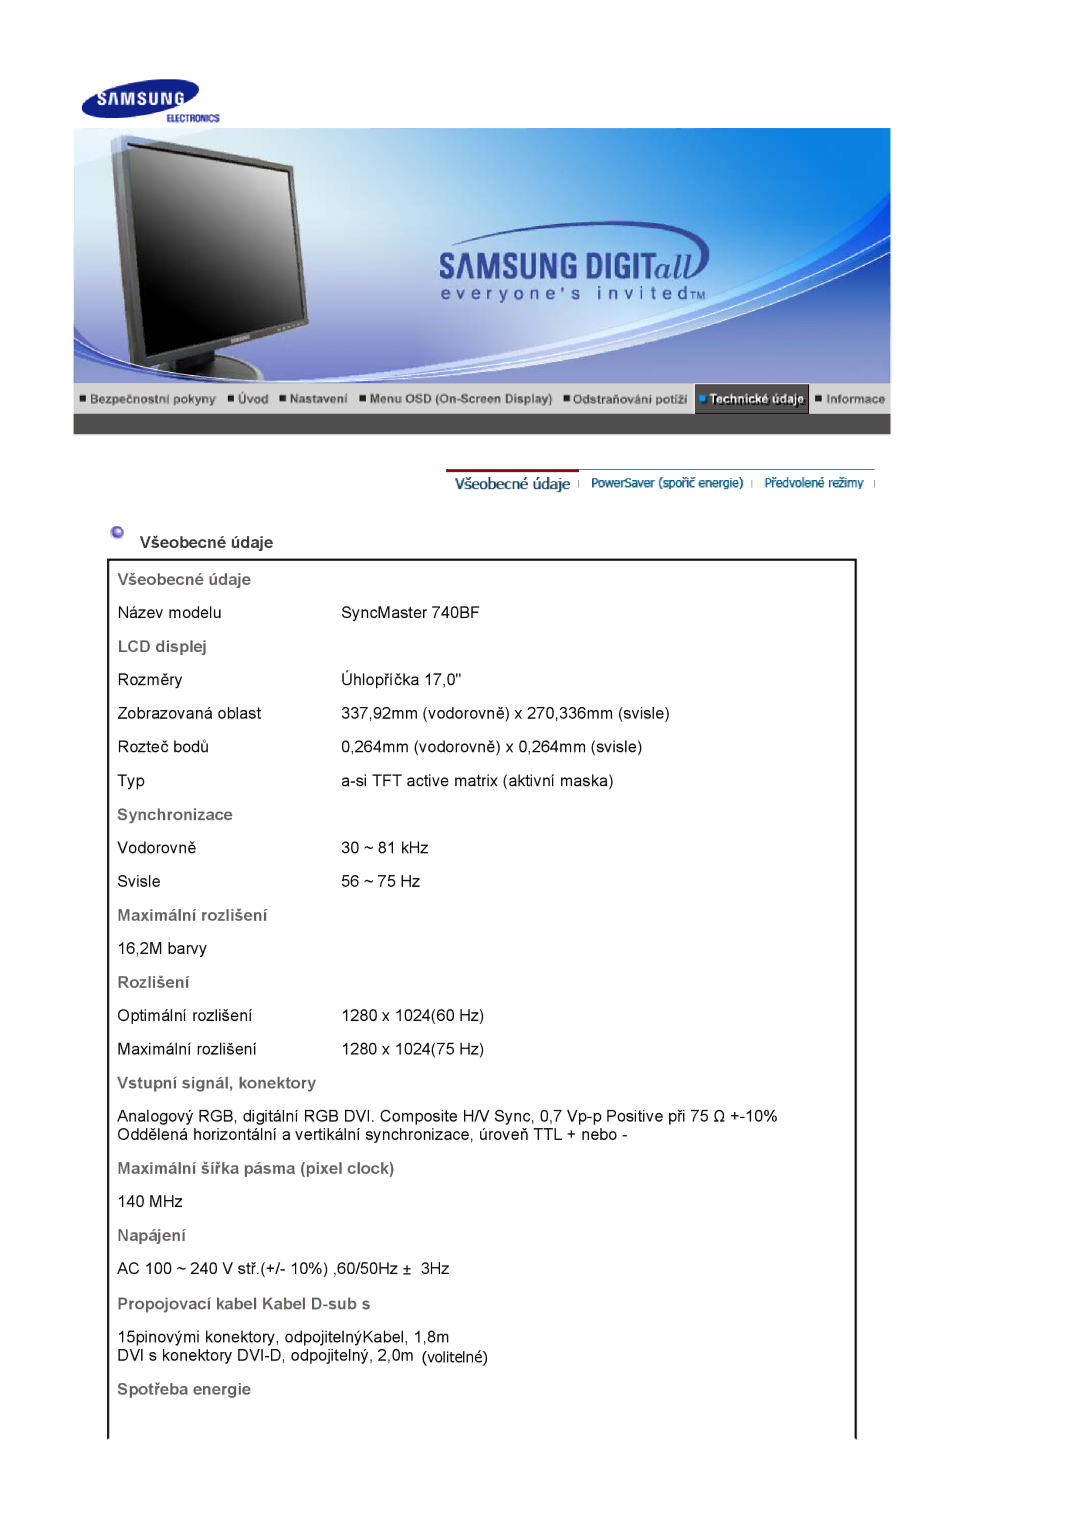 Samsung LS19HADKSE/EDC manual Všeobecné údaje, LCD displej, Synchronizace, Maximální rozlišení, Rozlišení, Napájení 